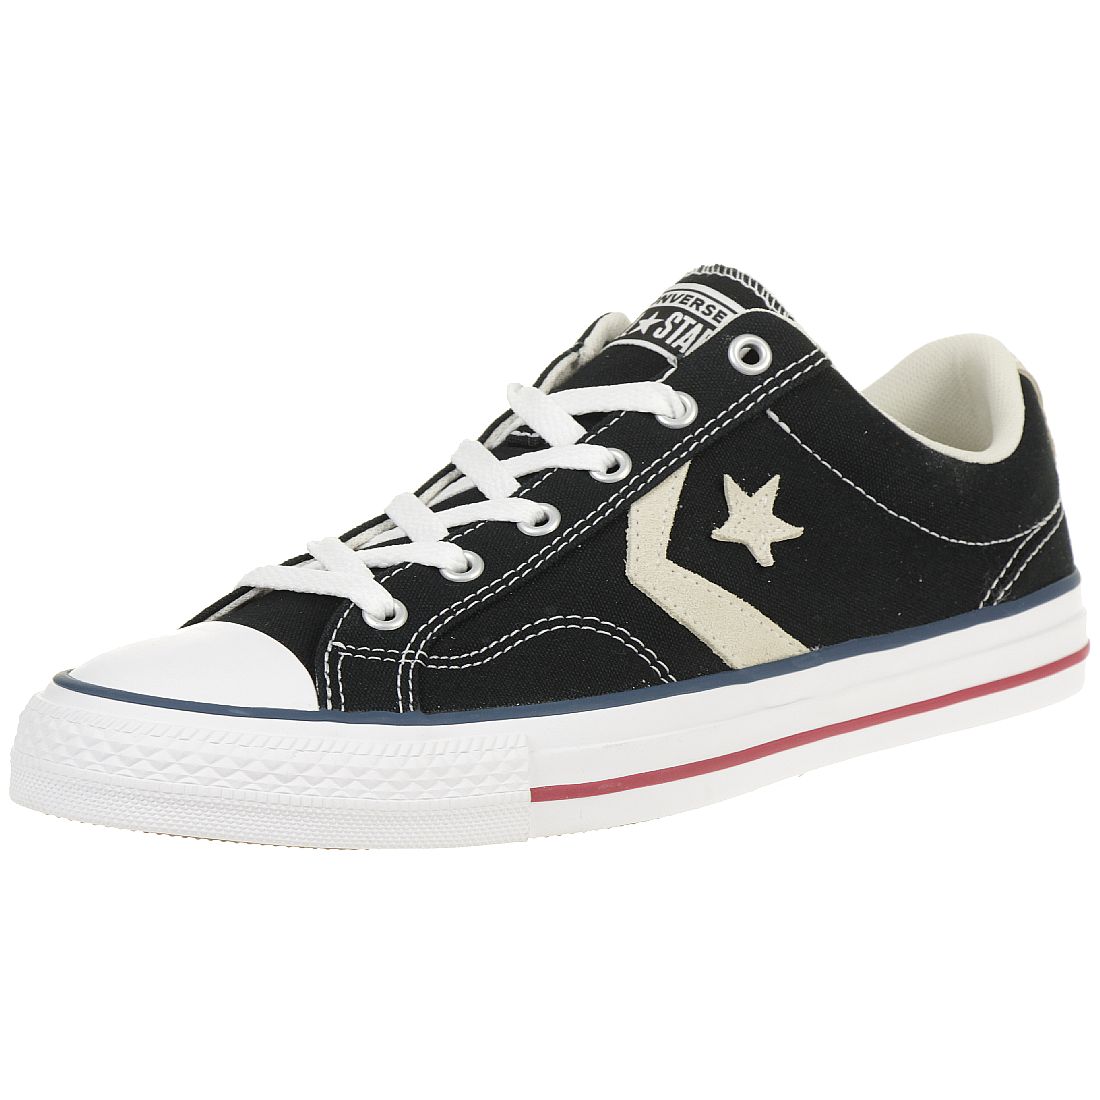 Converse STAR PLAYER OX Schuhe Sneaker Canvas Schwarz 144145C 36.5 EU